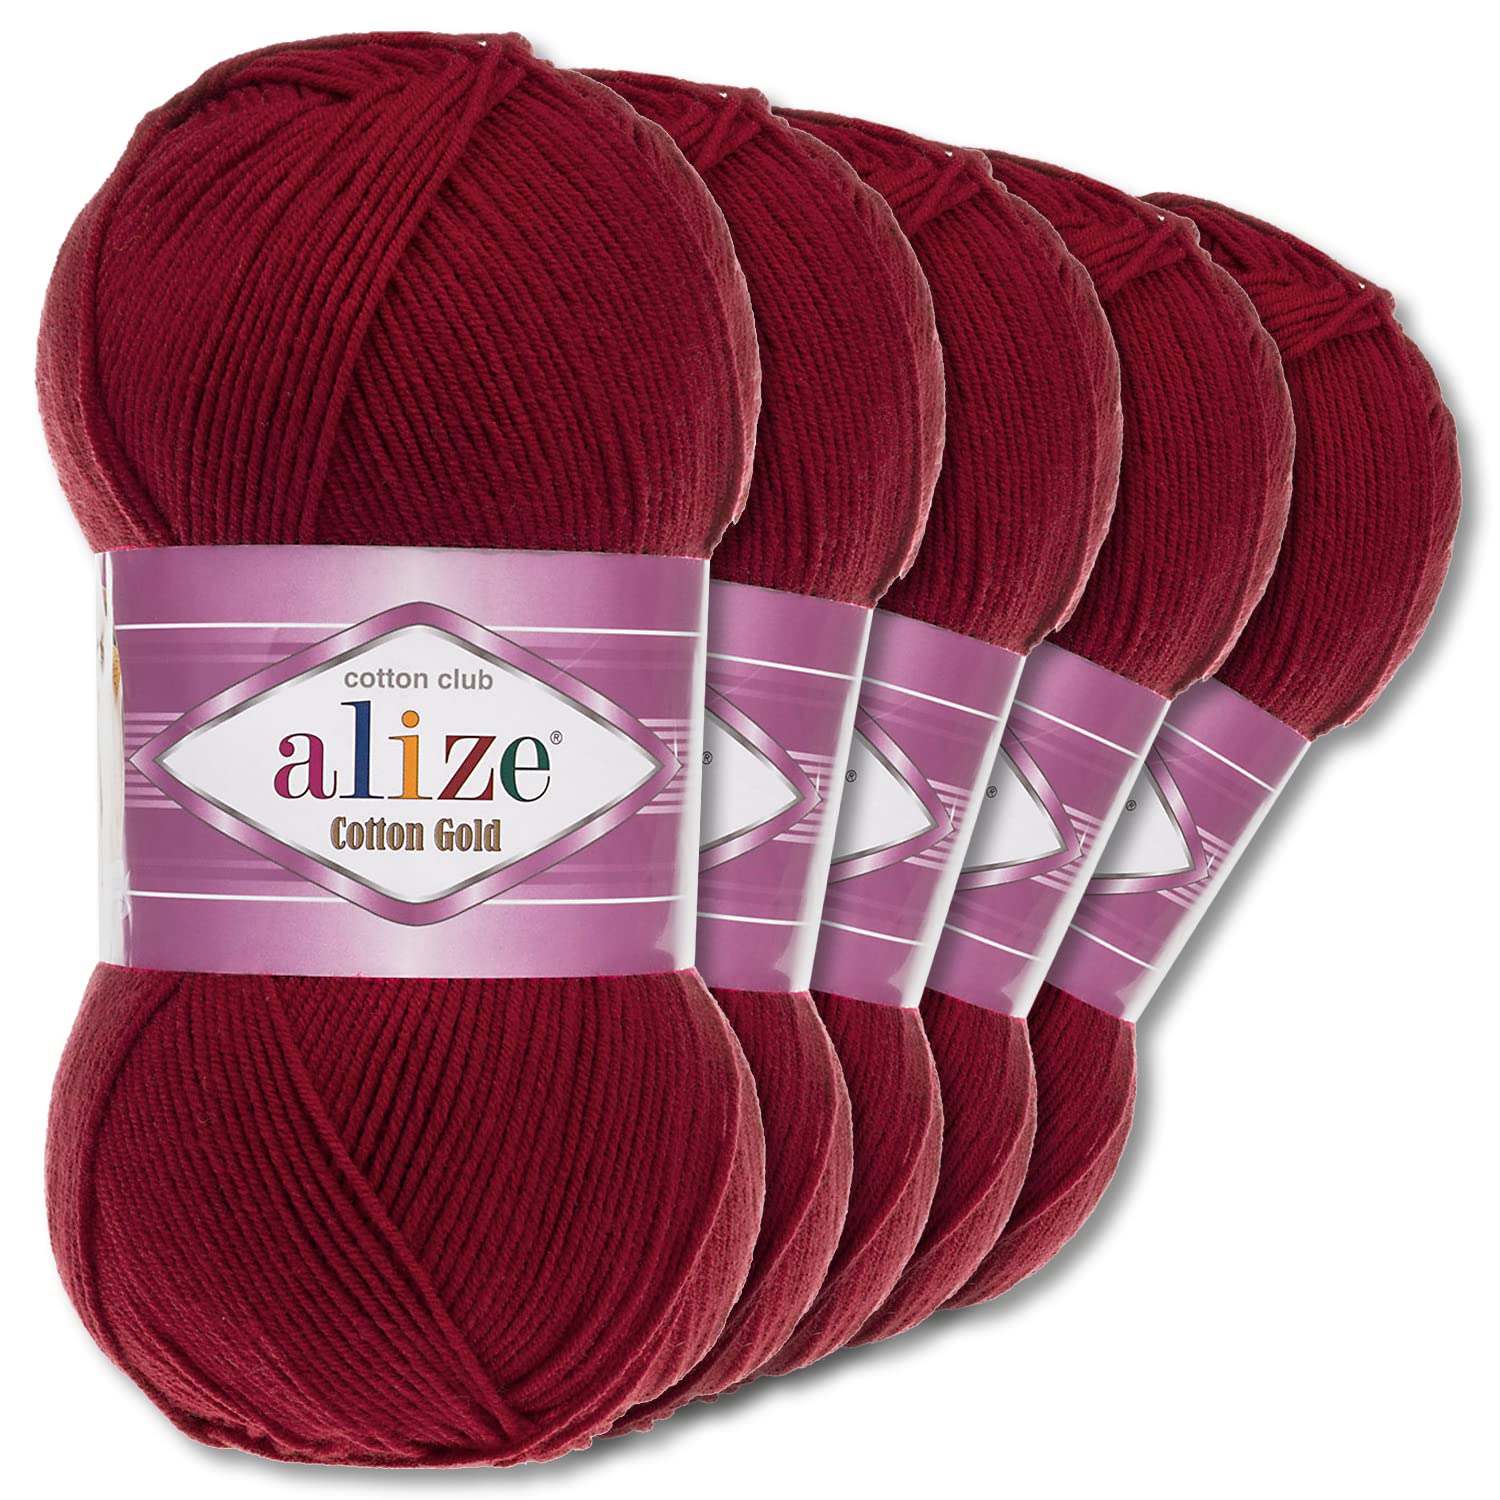 Alize 5 x 100 g Cotton Gold Premium Wolle| 39 Farben Sommerwolle Garn Stricken Amigurumi (390 | Kirschrot)